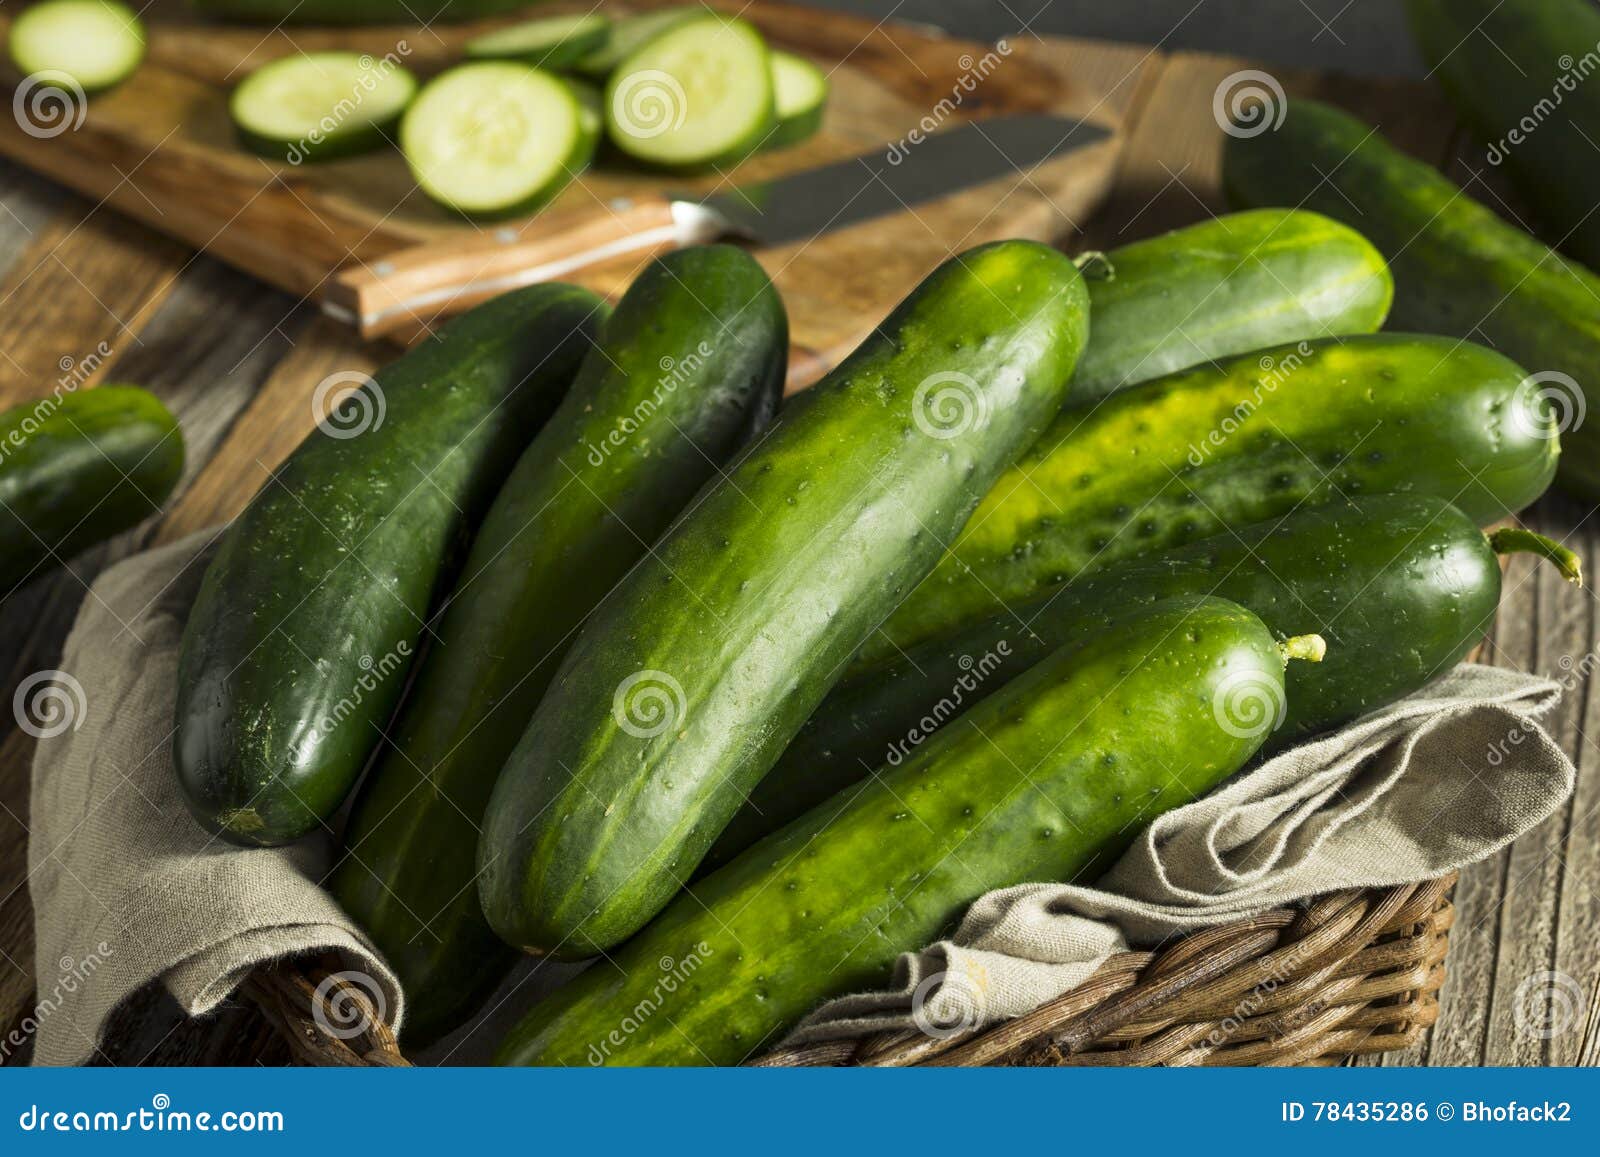 raw green organic cucumbers